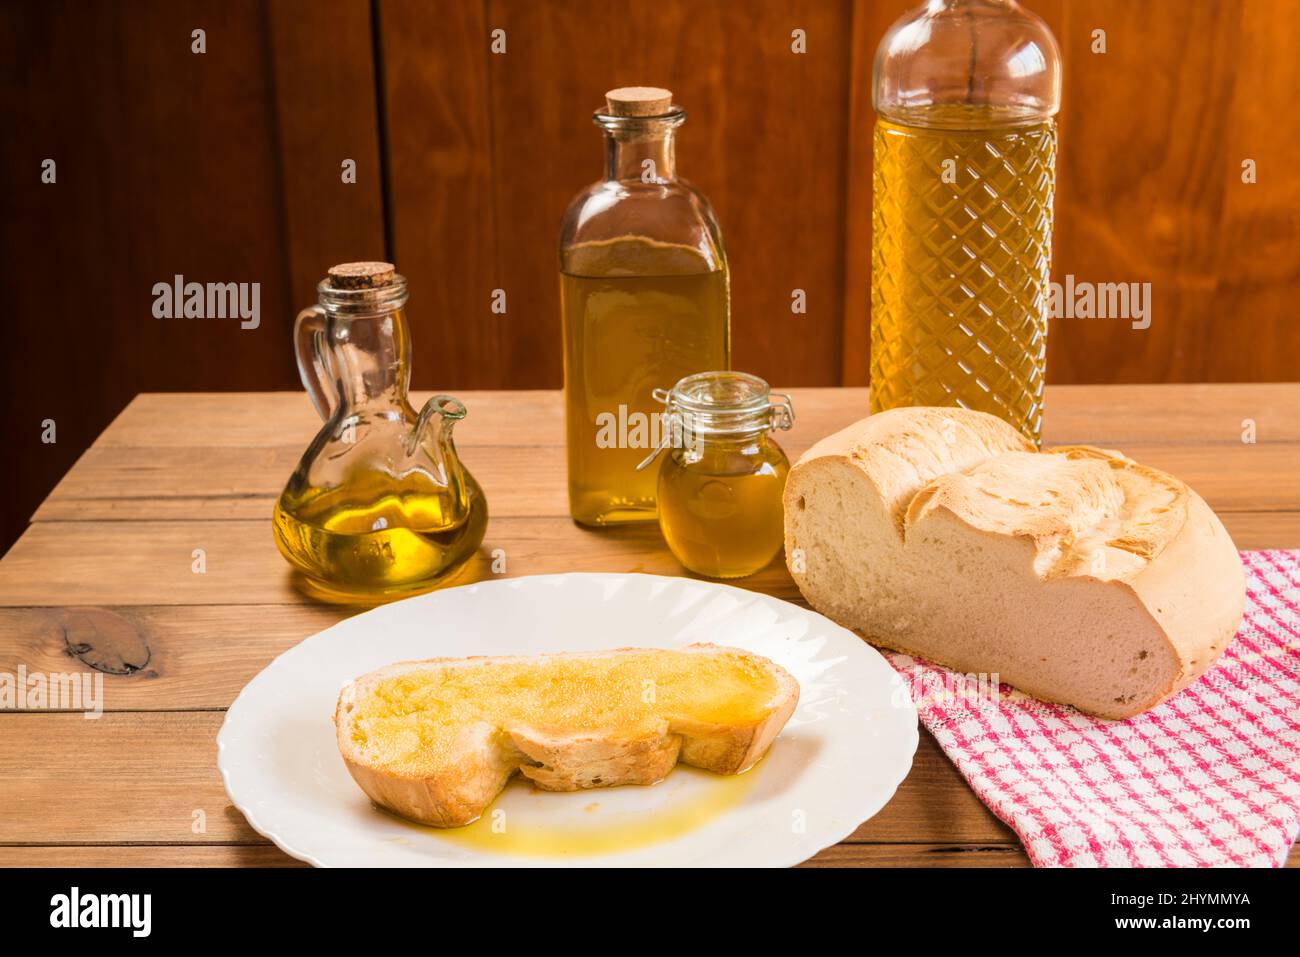 Stillleben einer Scheibe Brot mit nativem Olivenöl extra auf einem weißen Teller, neben Flaschen und Behältern mit Öl gefüllt, auf einem rustikalen Holztisch. Stockfoto